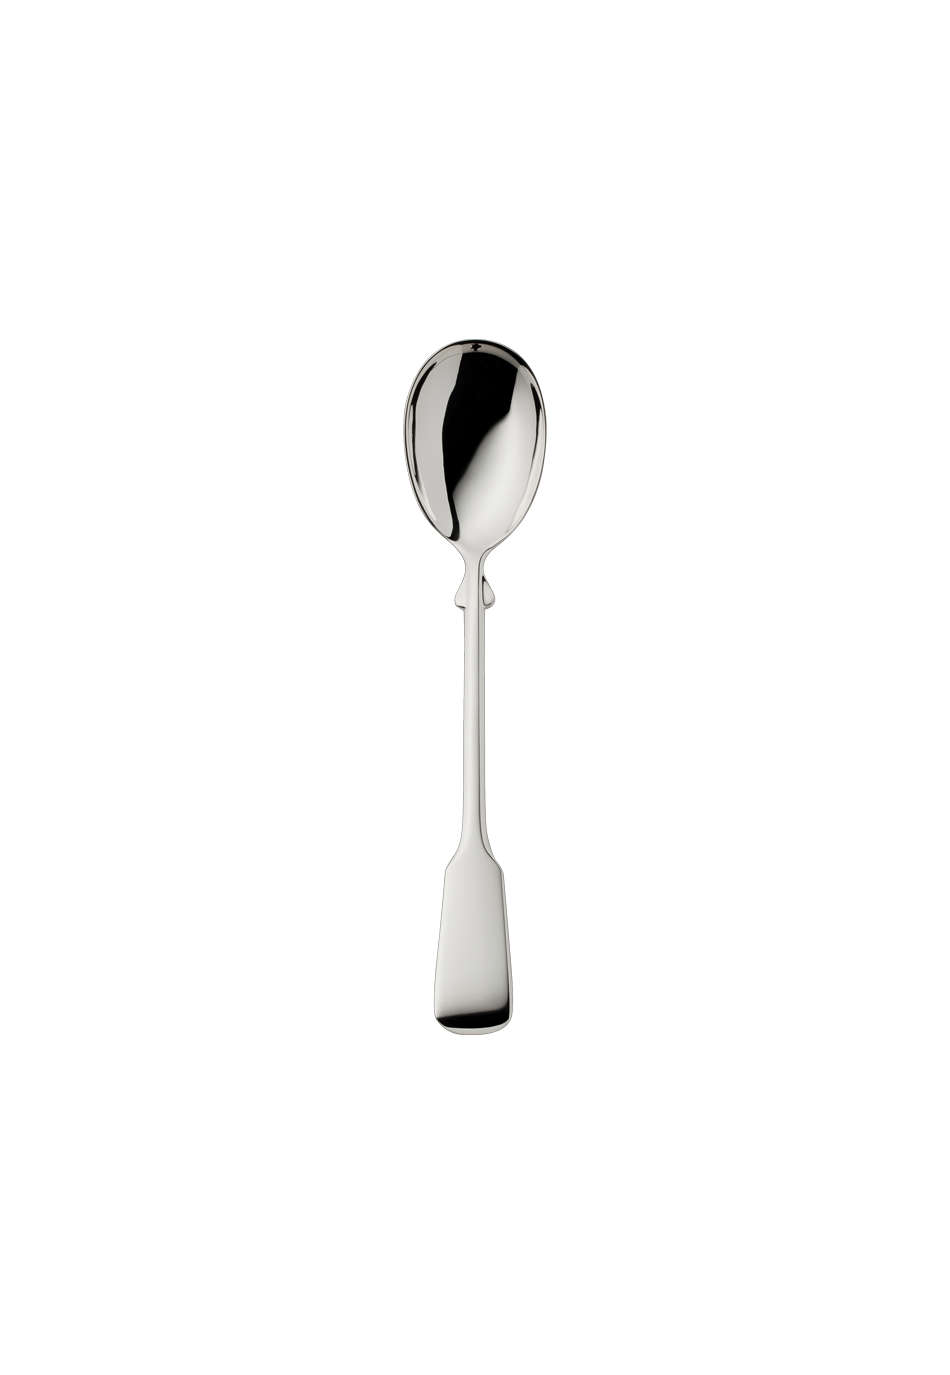 Spaten Ice-Cream Spoon (150g massive silverplated)